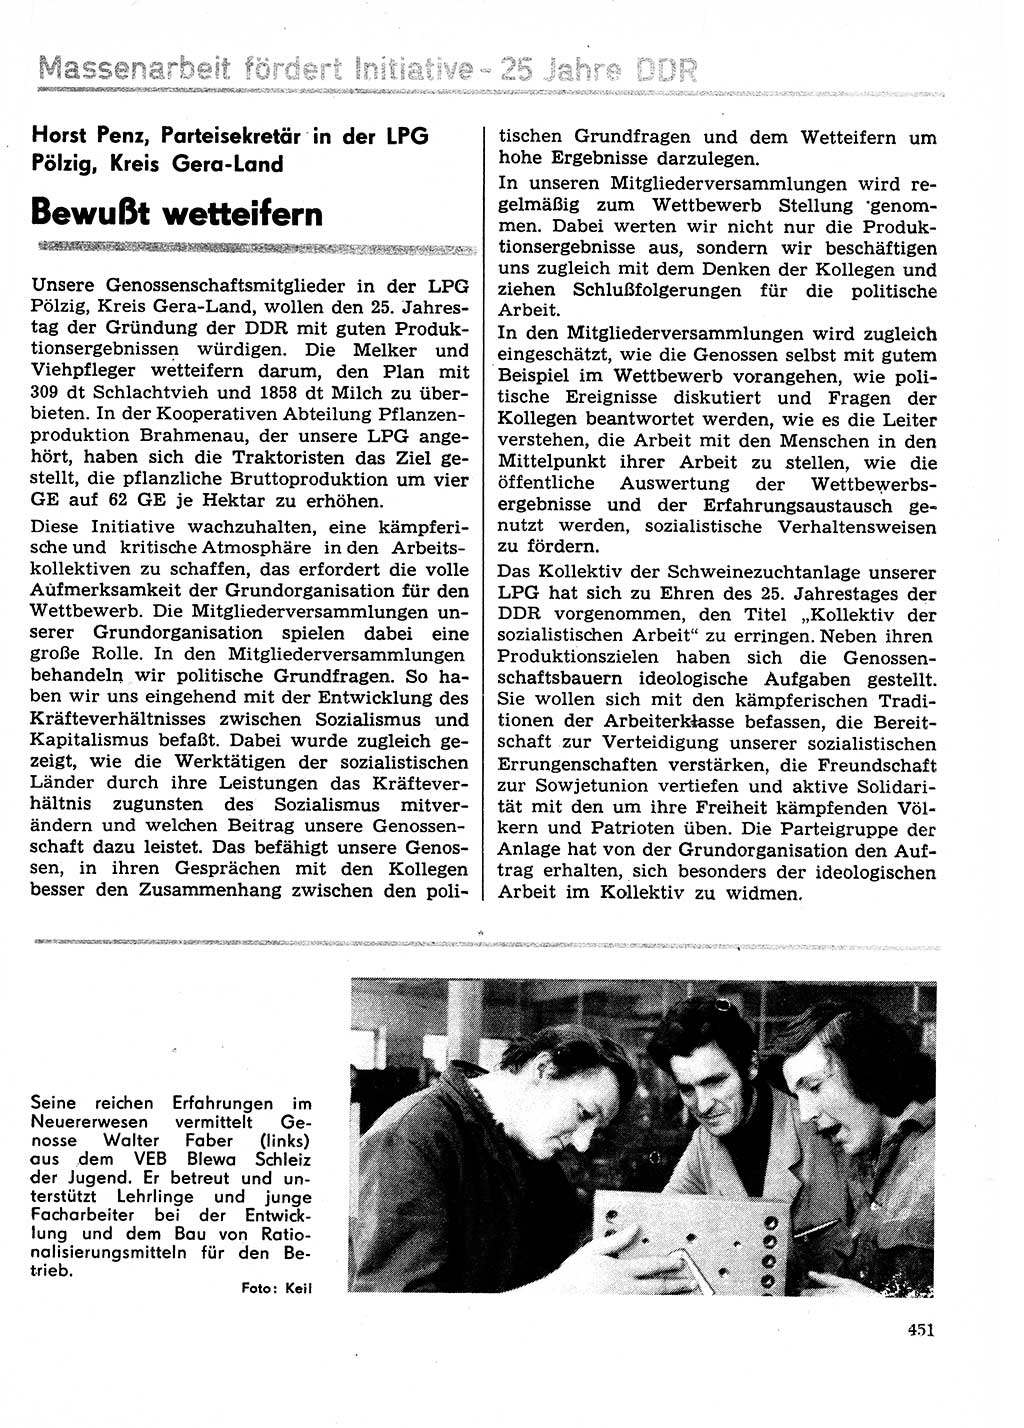 Neuer Weg (NW), Organ des Zentralkomitees (ZK) der SED (Sozialistische Einheitspartei Deutschlands) für Fragen des Parteilebens, 29. Jahrgang [Deutsche Demokratische Republik (DDR)] 1974, Seite 451 (NW ZK SED DDR 1974, S. 451)